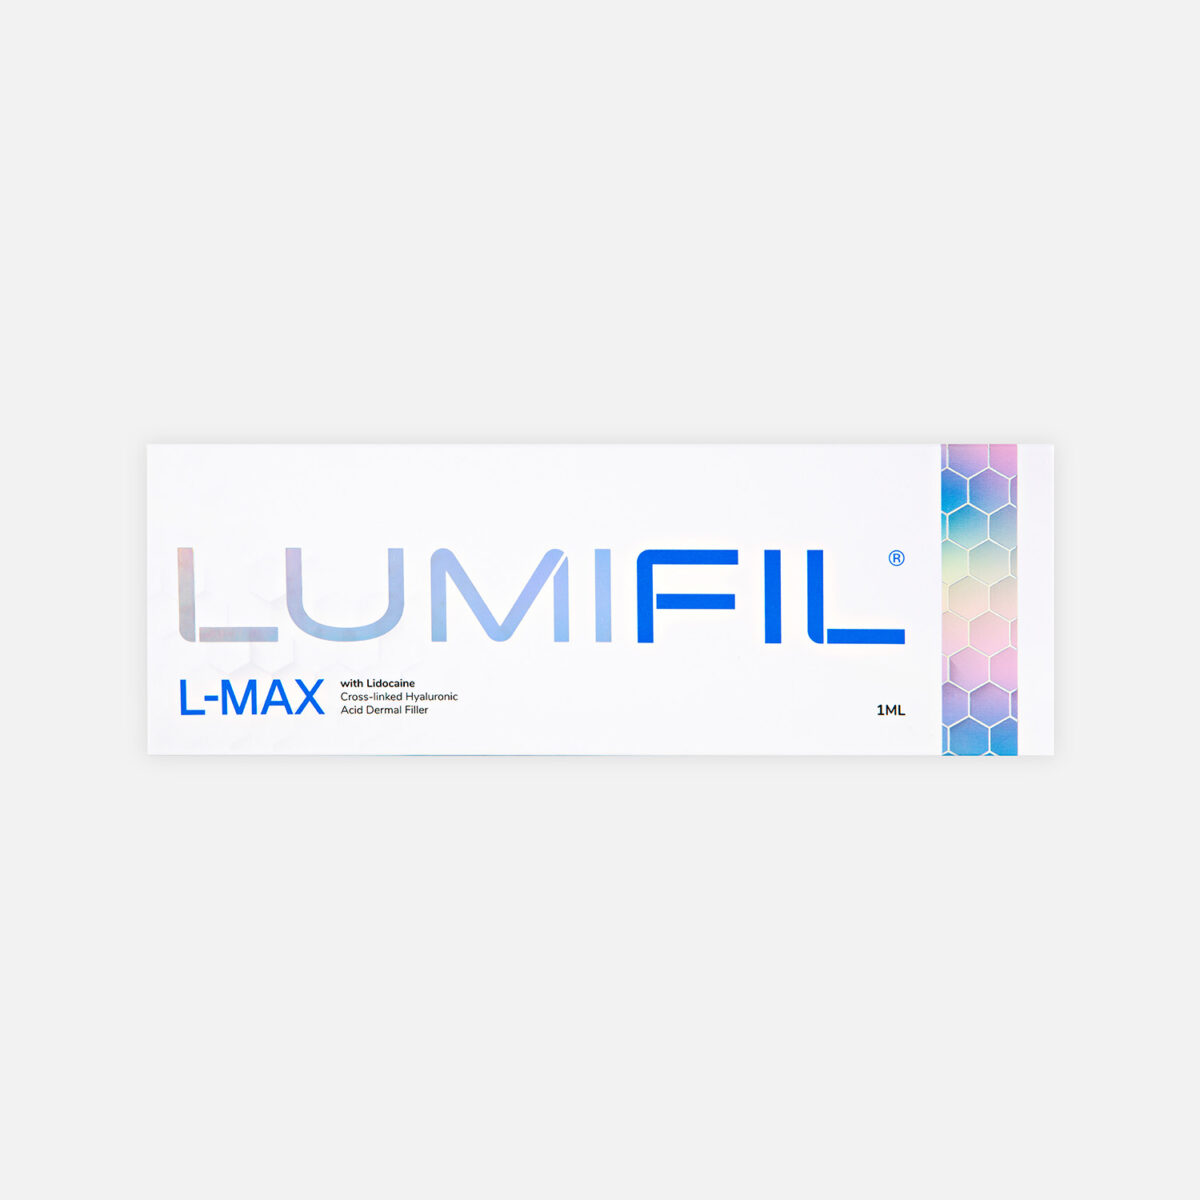 LUMIFIL L-MAX